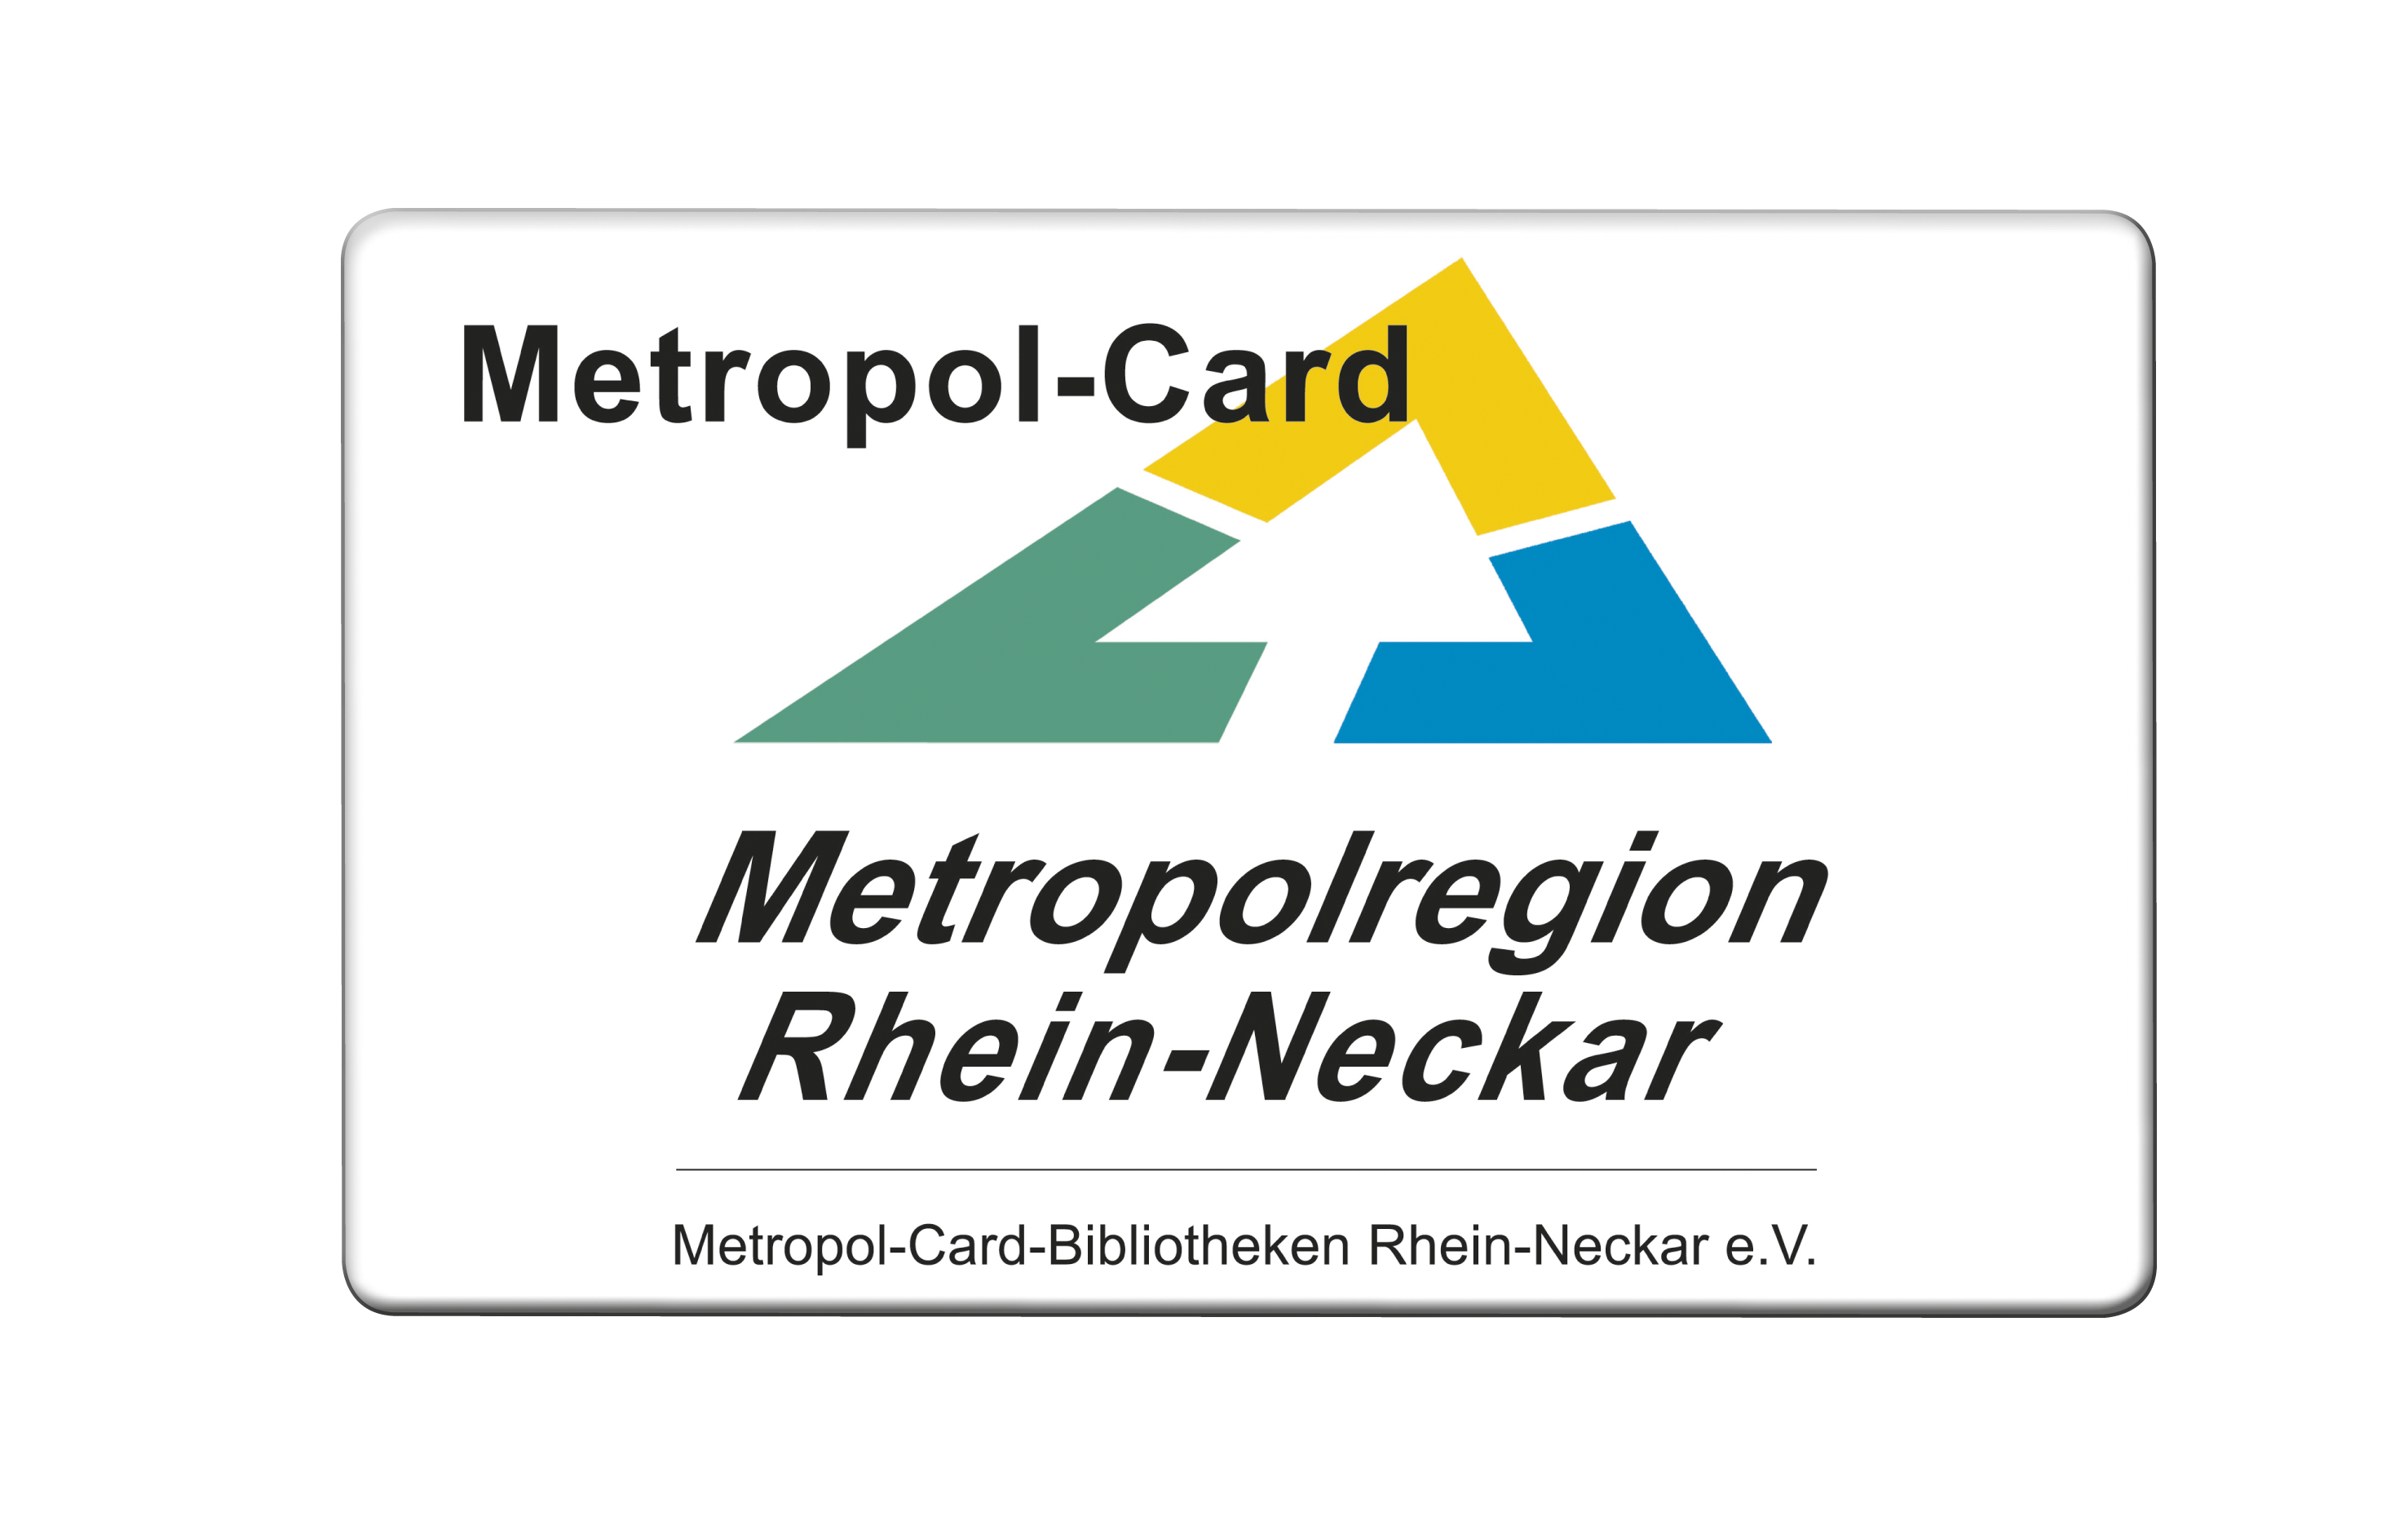 In der Mediothek mit der Metropol-Card Medien ausleihen